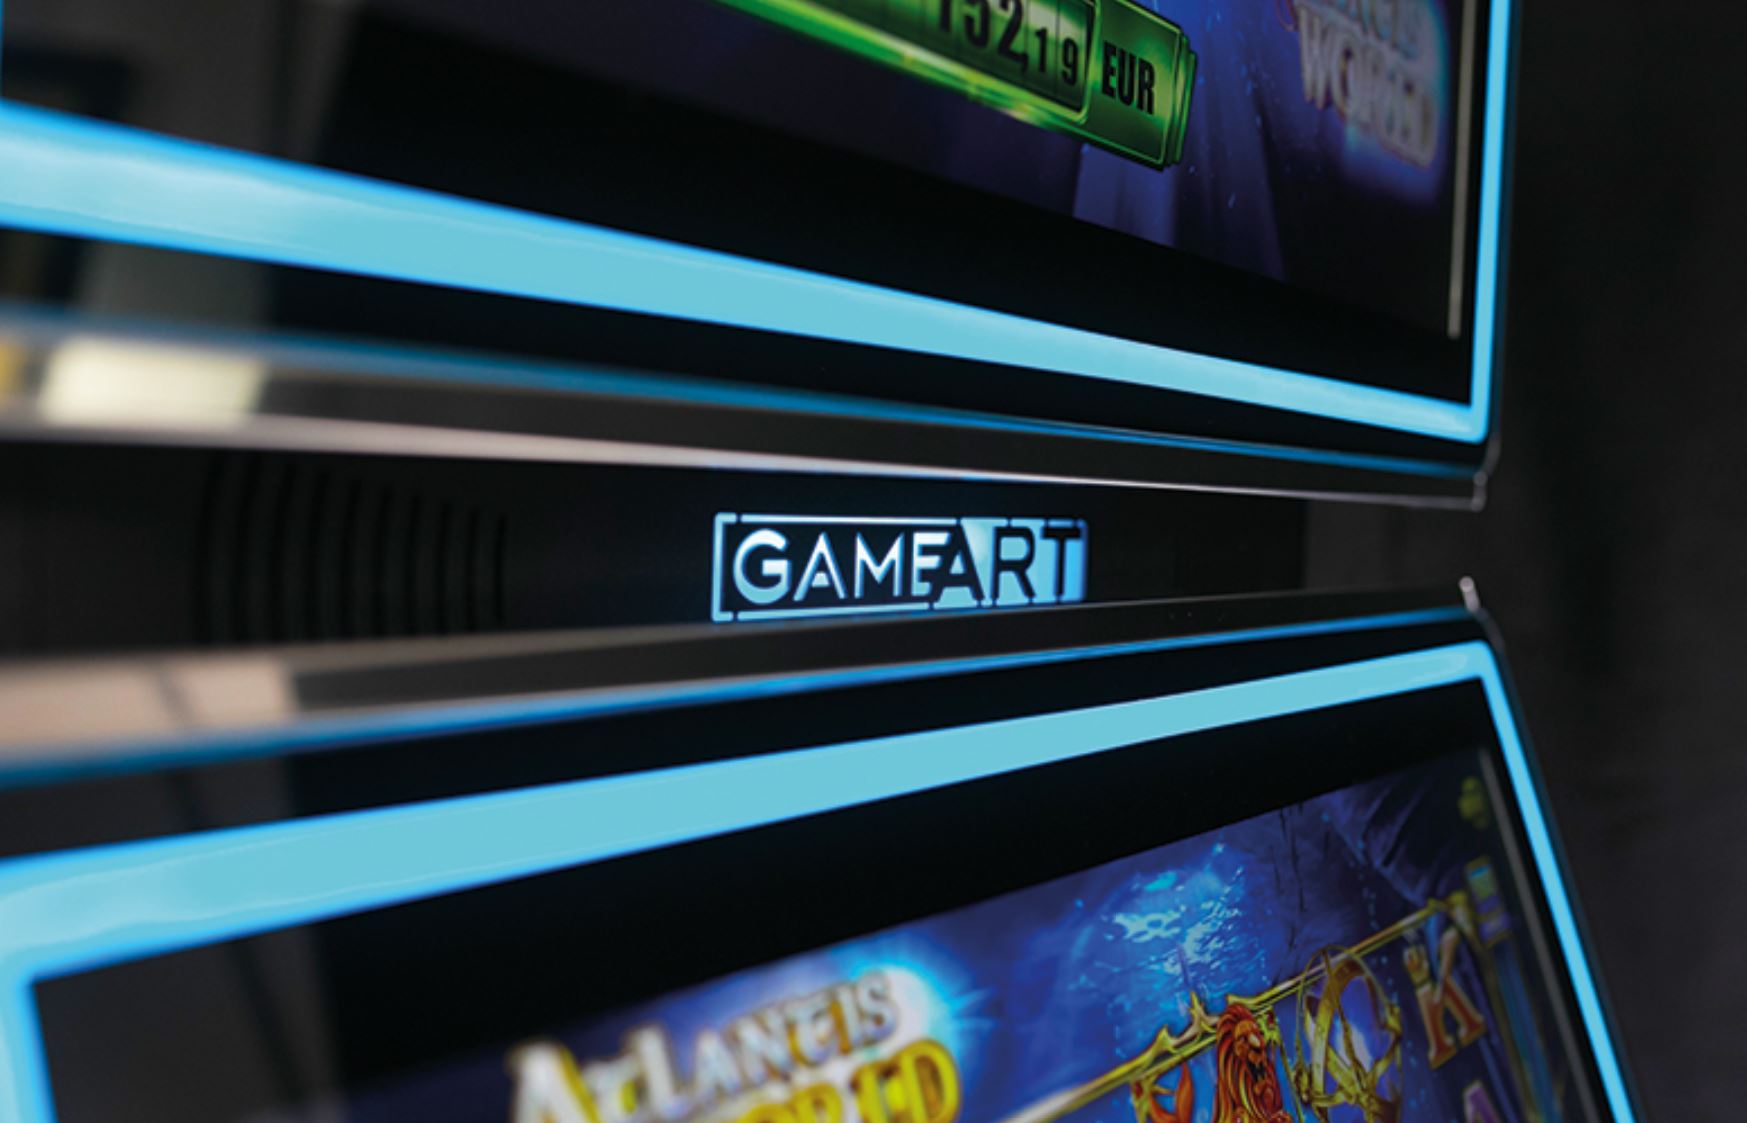 GameArt Provider